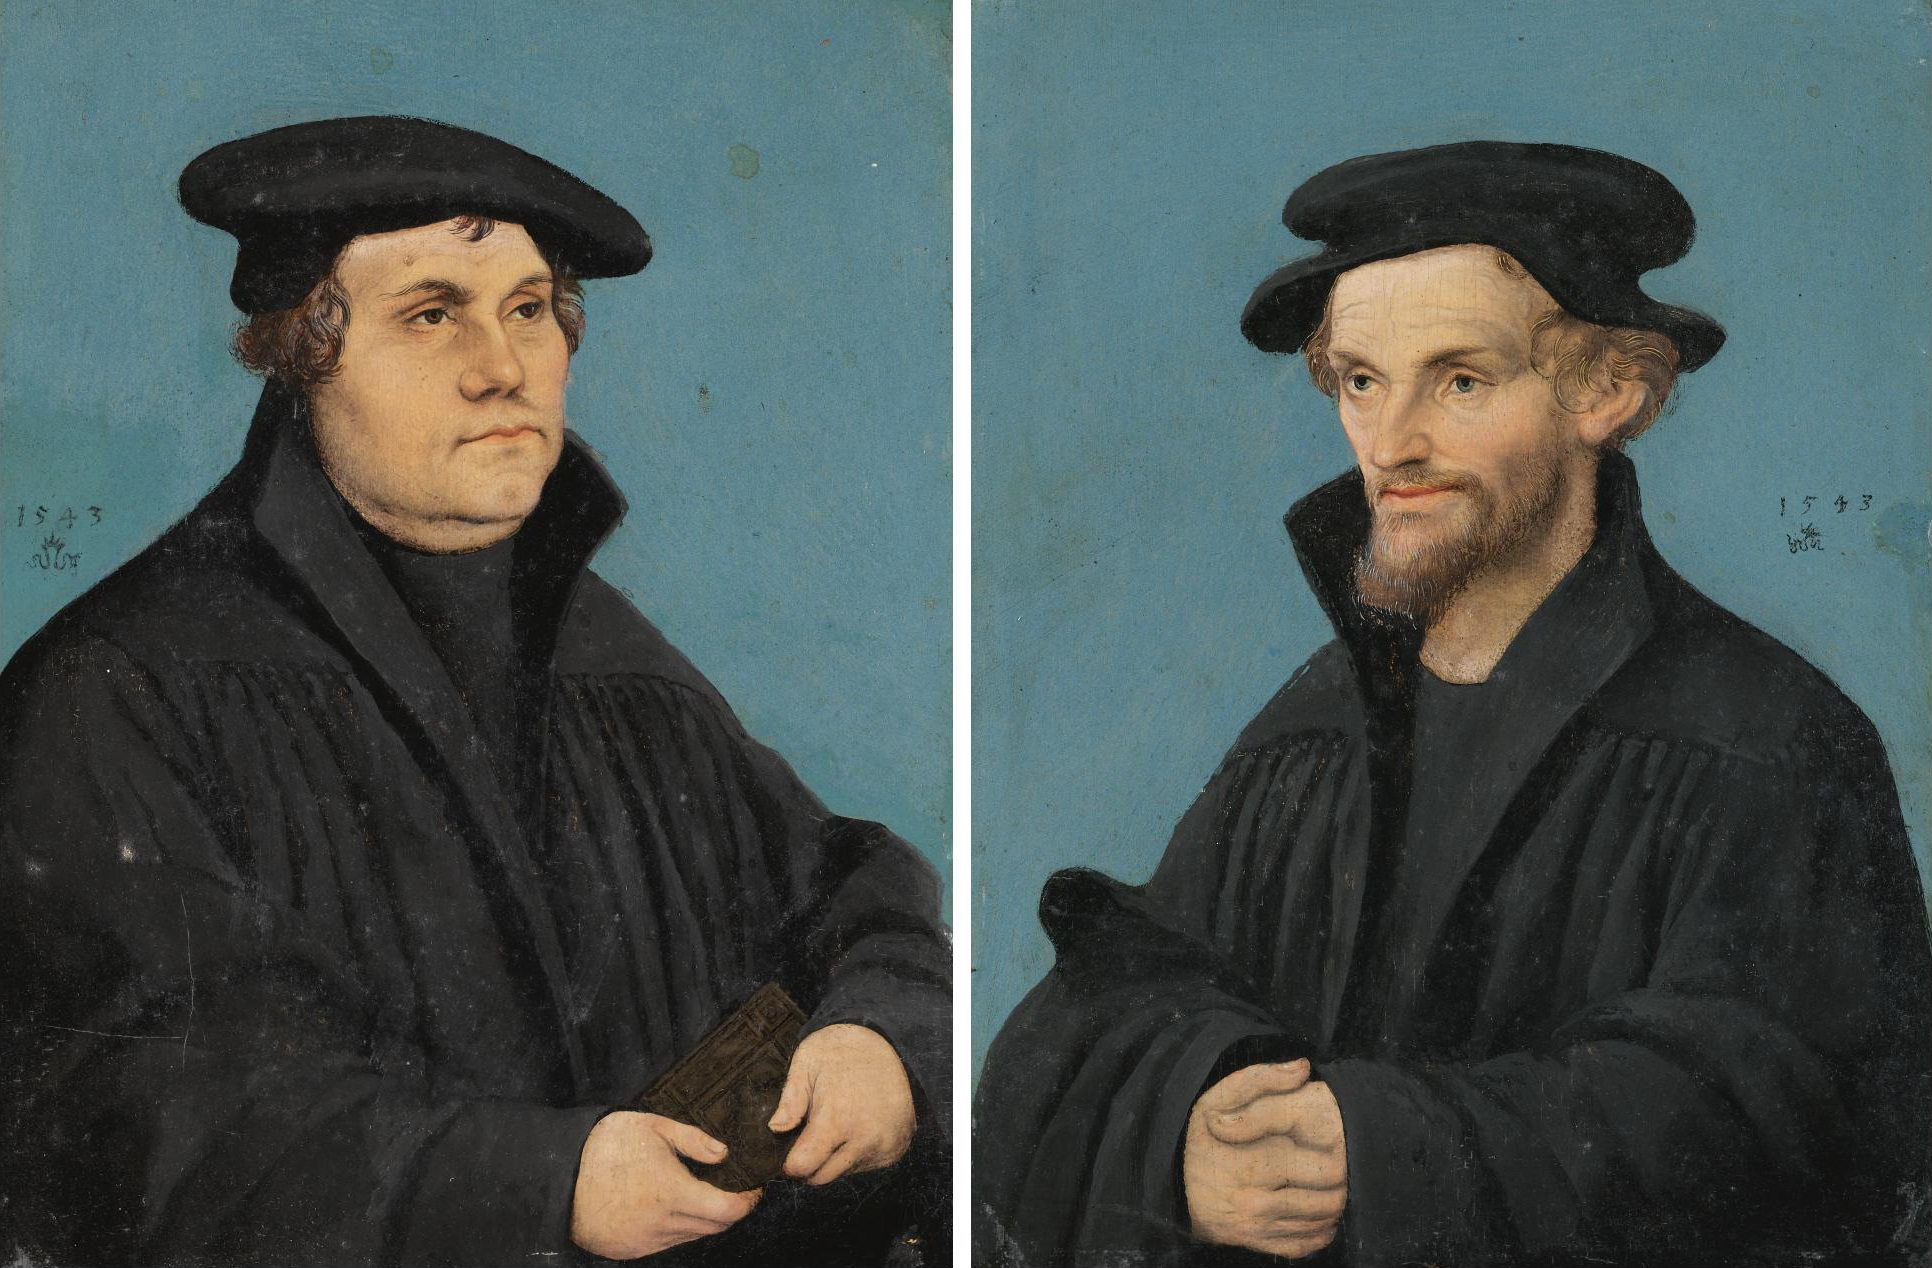 Martín Lutero y Felipe Melanchton, 1543, retratados por Lucas Cranach el Viejo.